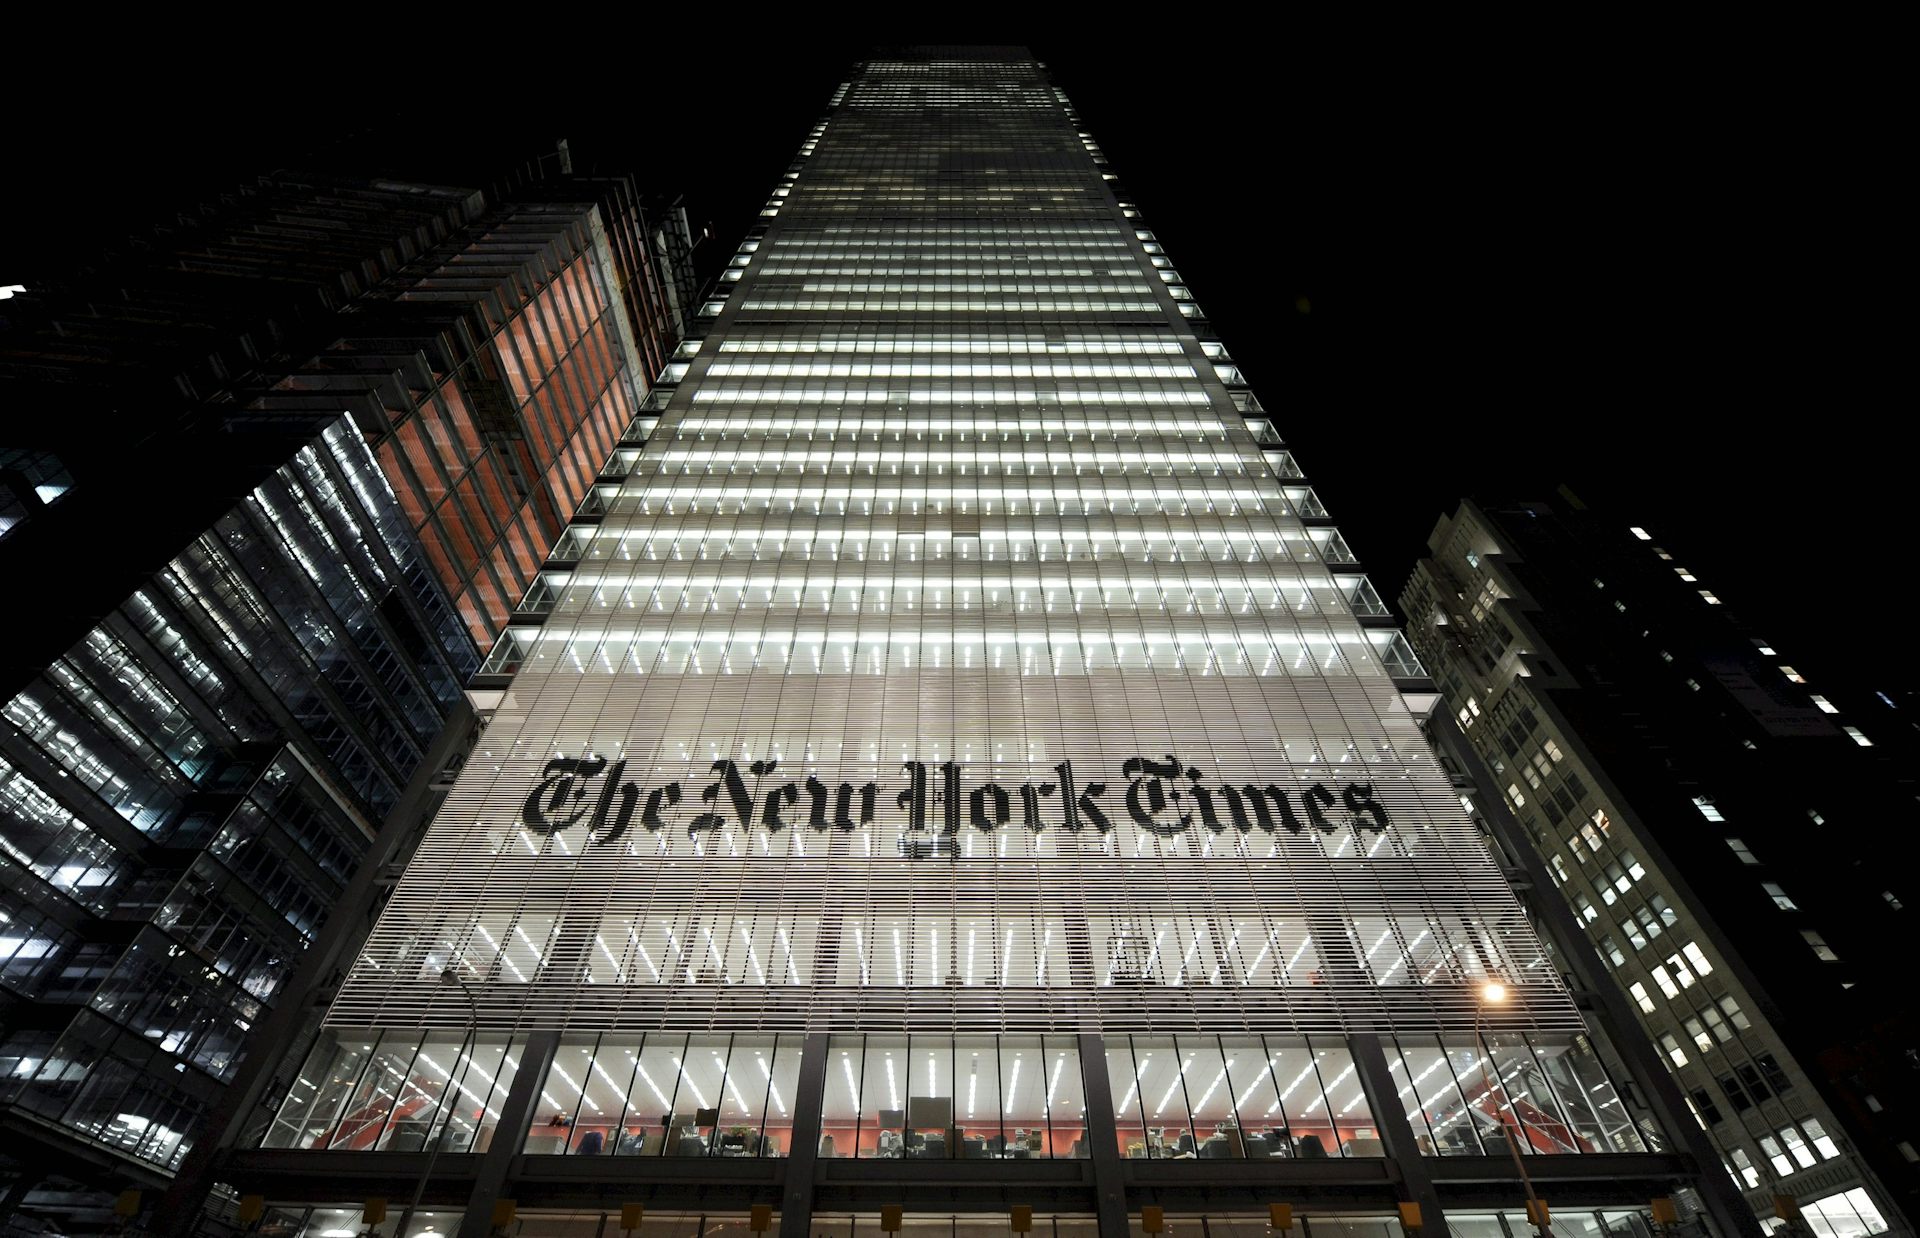 Нью йорк таймс